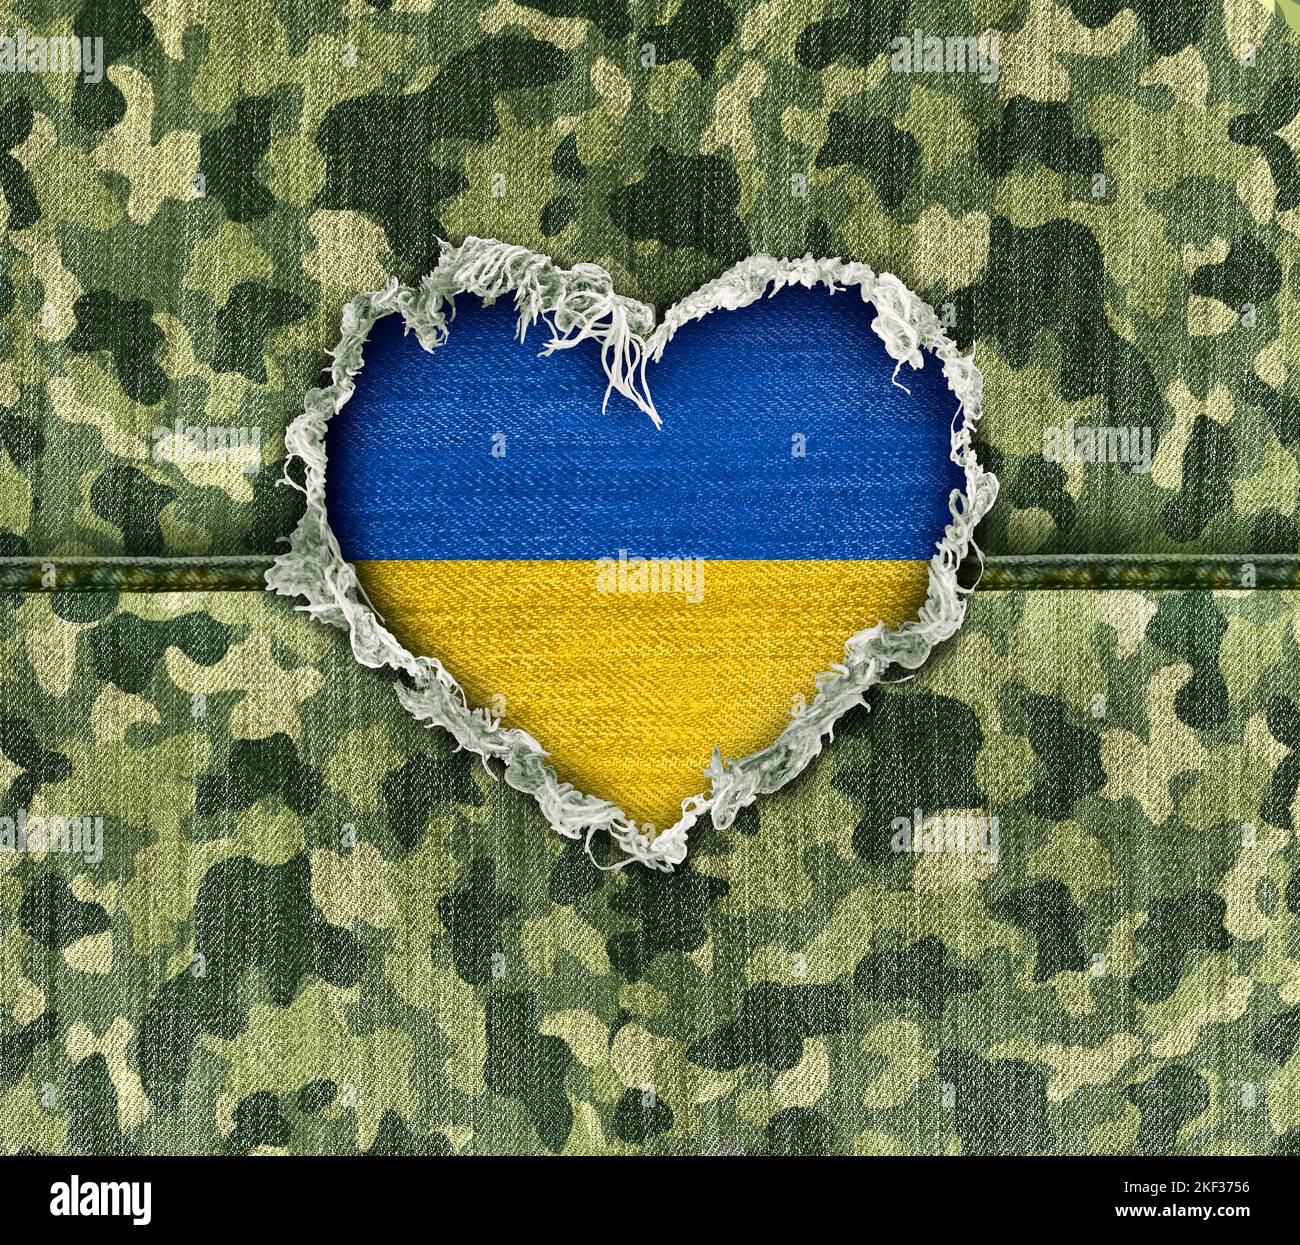 Ukraine Military Hero amor como un tejido de camuflaje ucraniano en tiempos de guerra con un agujero en forma de corazón que representa el respeto por los héroes Foto de stock